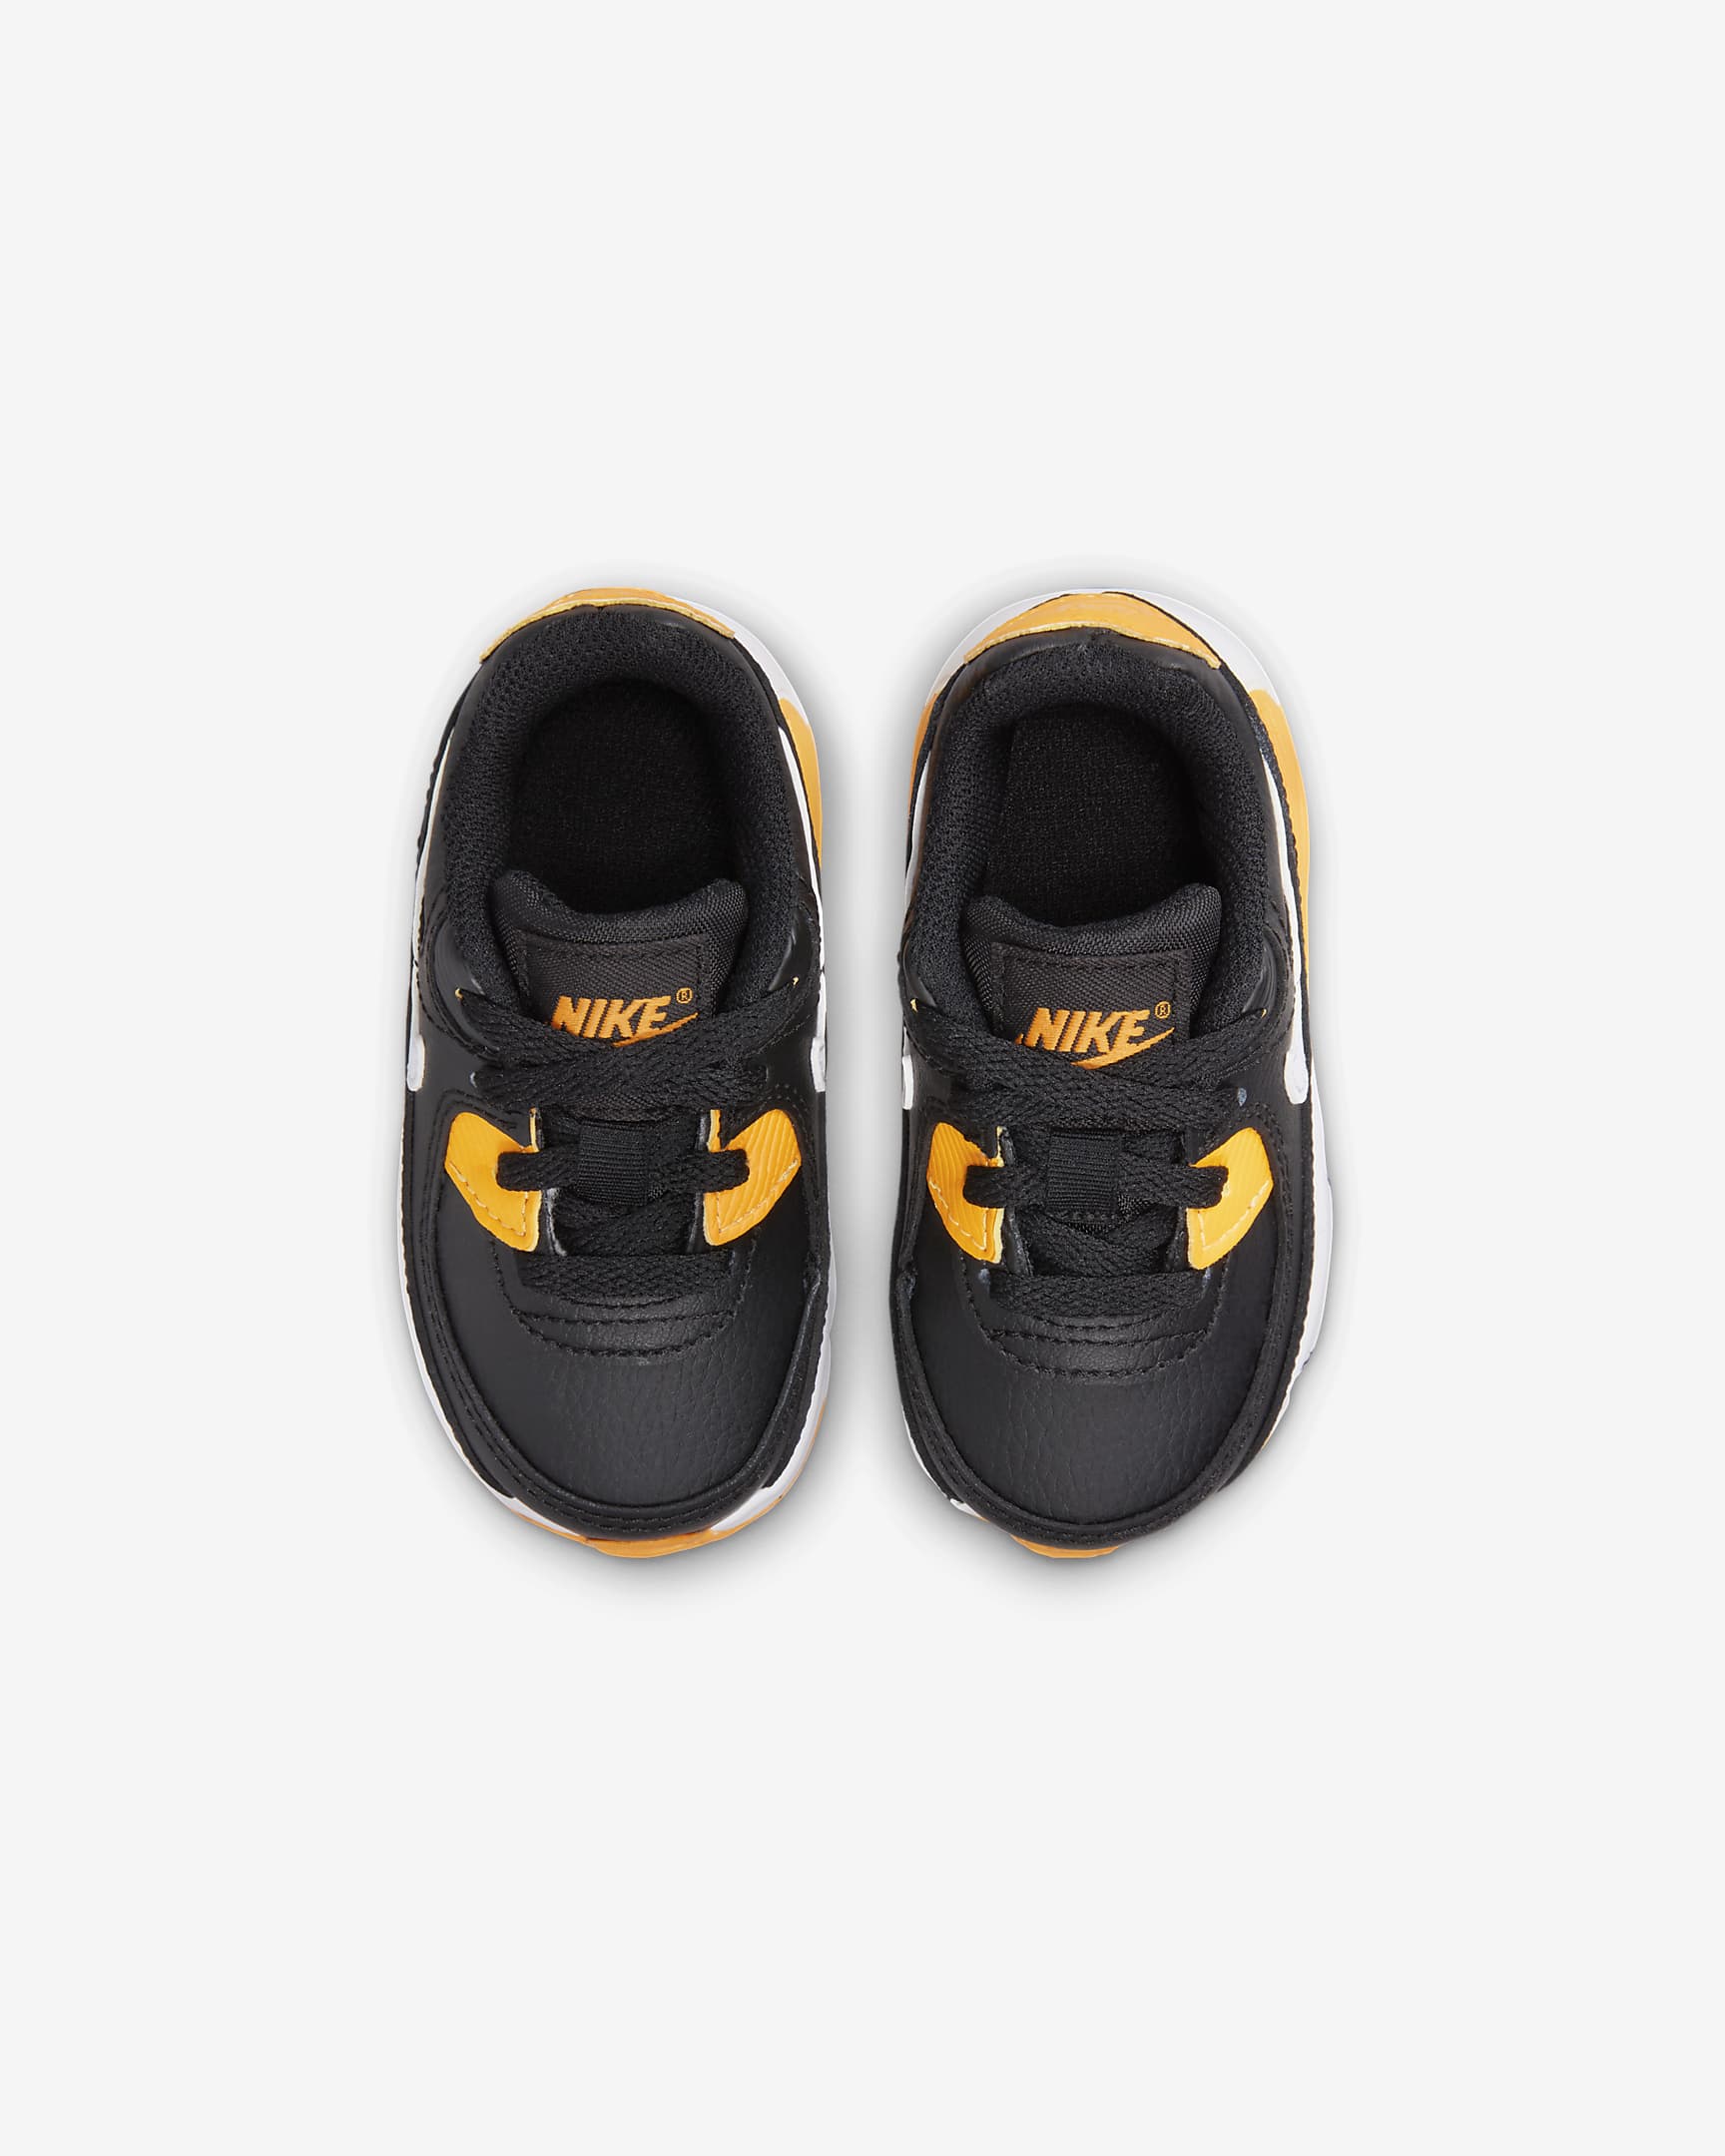 Chaussure Nike Air Max 90 LTR pour Bébé et Petit enfant - Noir/University Gold/Blanc